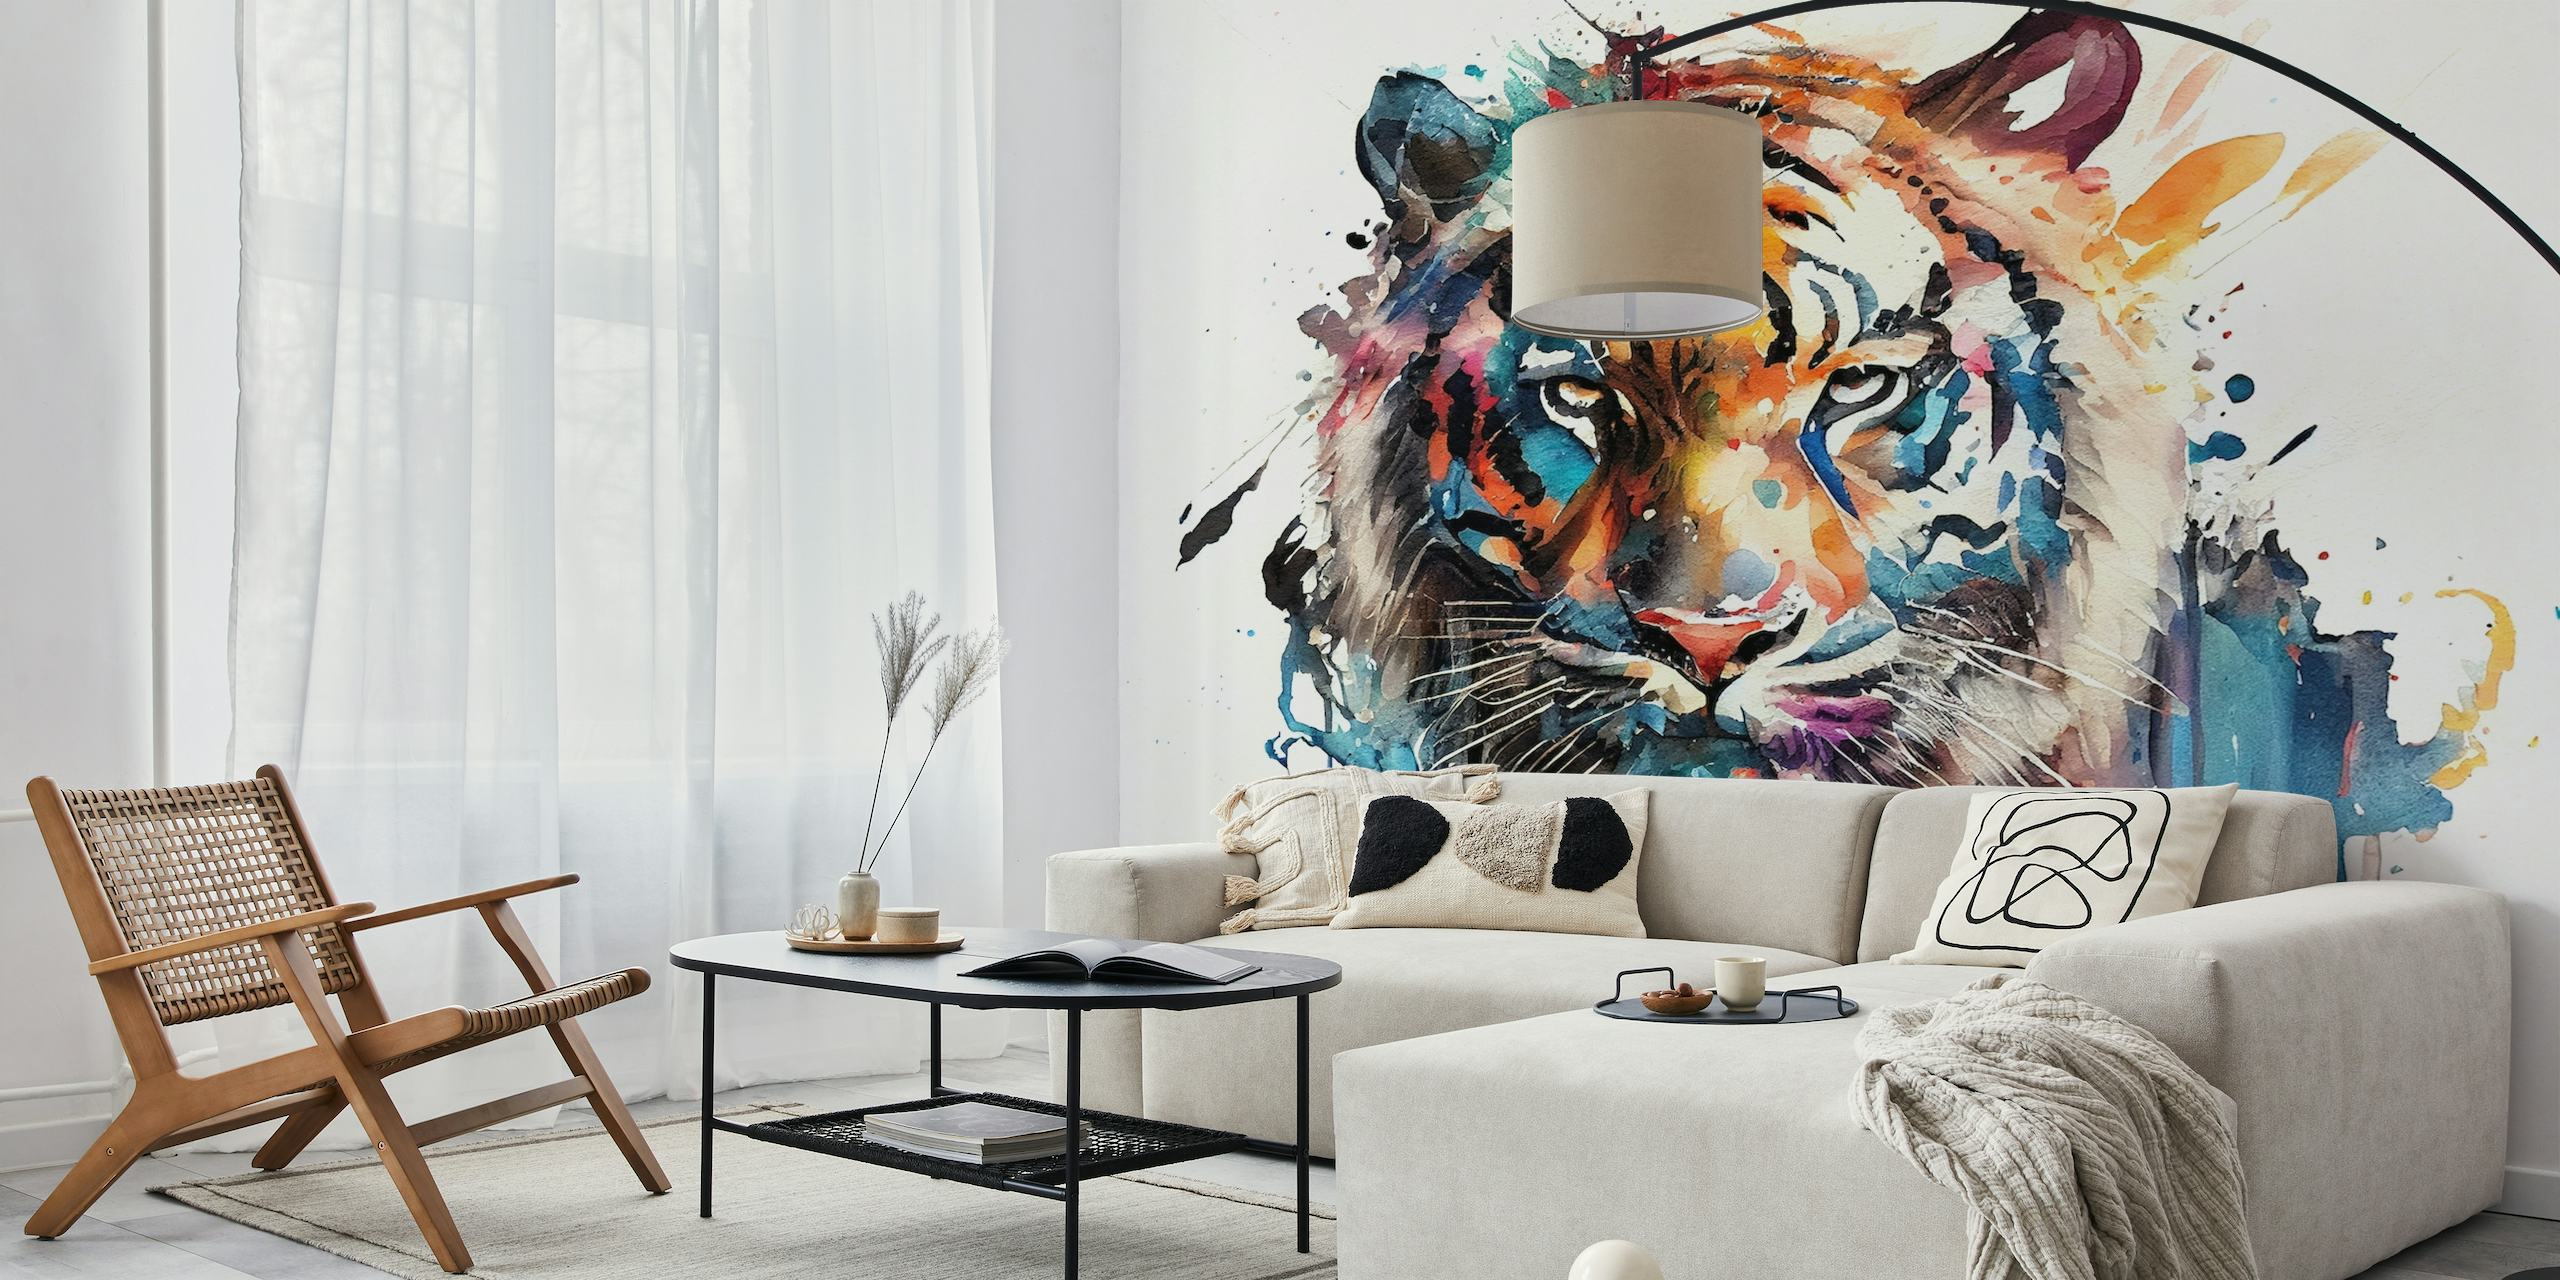 Et akvarellmaleri av en tiger med en blanding av livlige farger mot en hvit bakgrunn, omgjort til et veggmaleri.